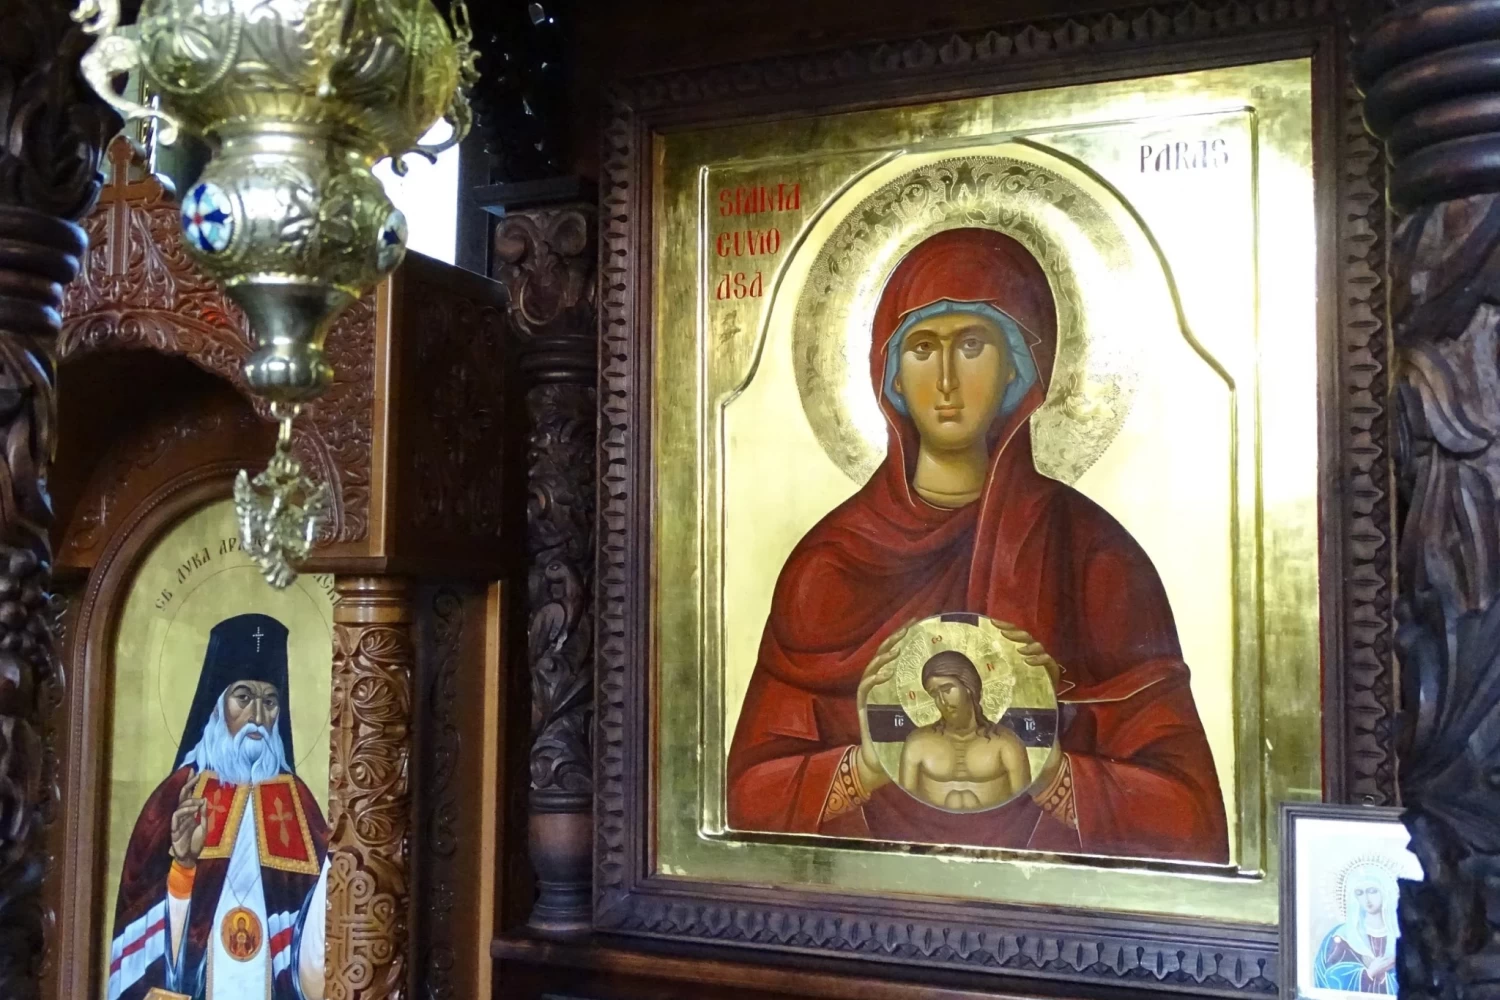 Ακάθιστος Ύμνος της Παναγίας: Μεγάλη γιορτή της ορθοδοξίας σήμερα 19 Απριλίου